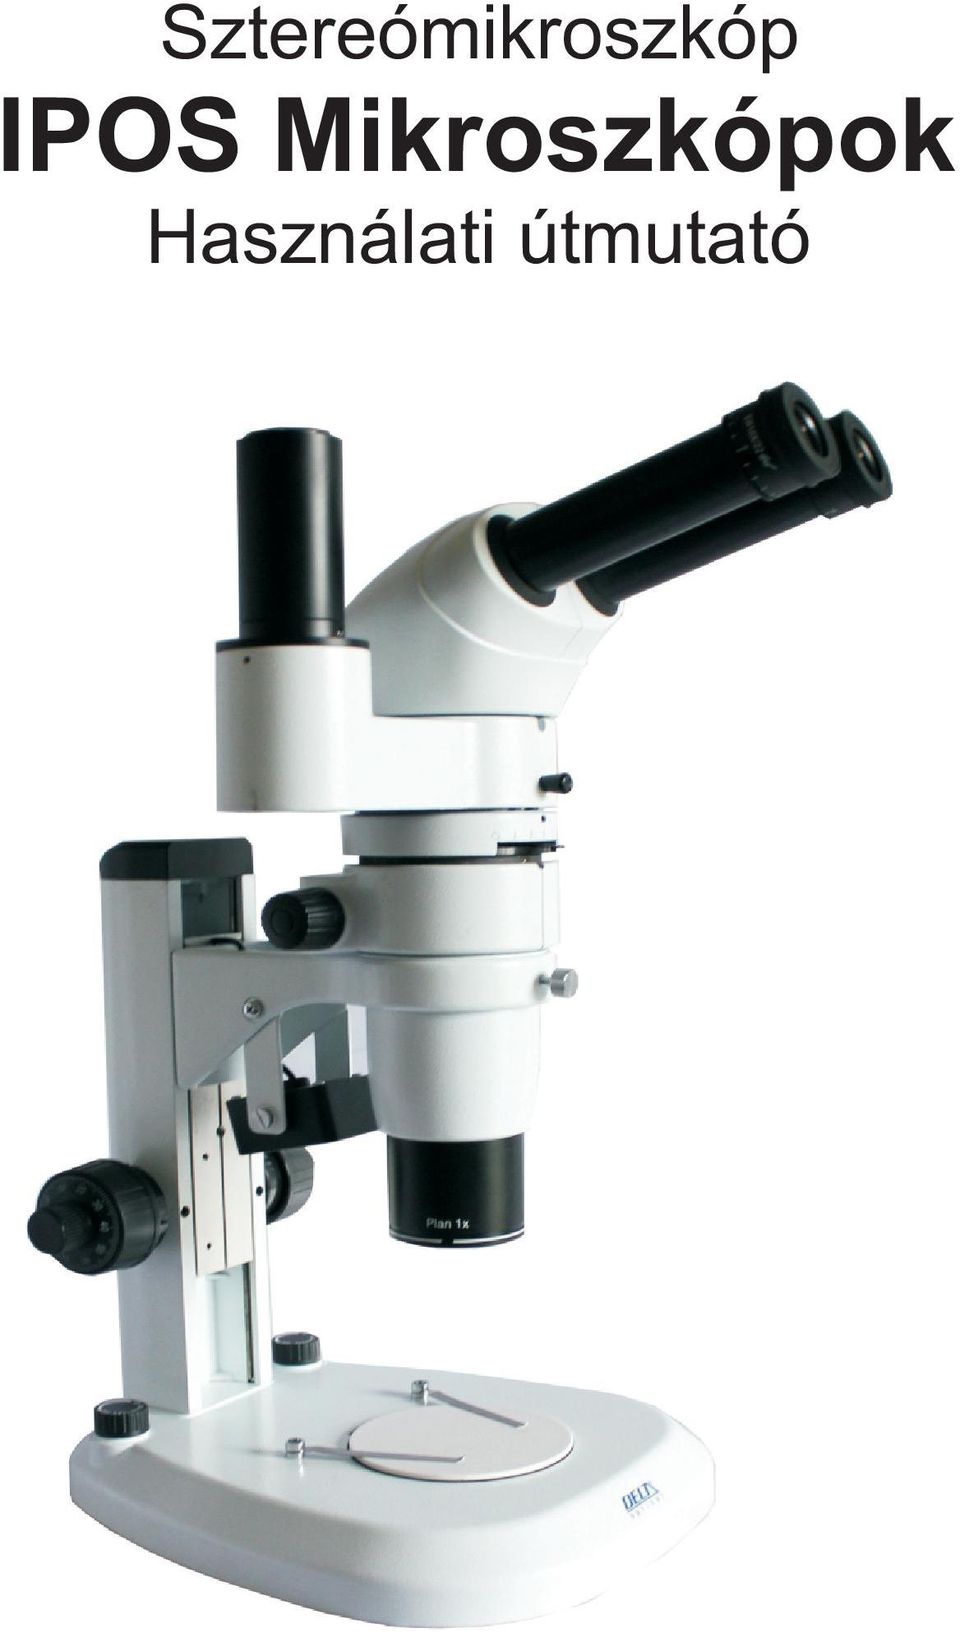 Sztereómikroszkóp IPOS Mikroszkópok. Használati útmutató - PDF Free Download